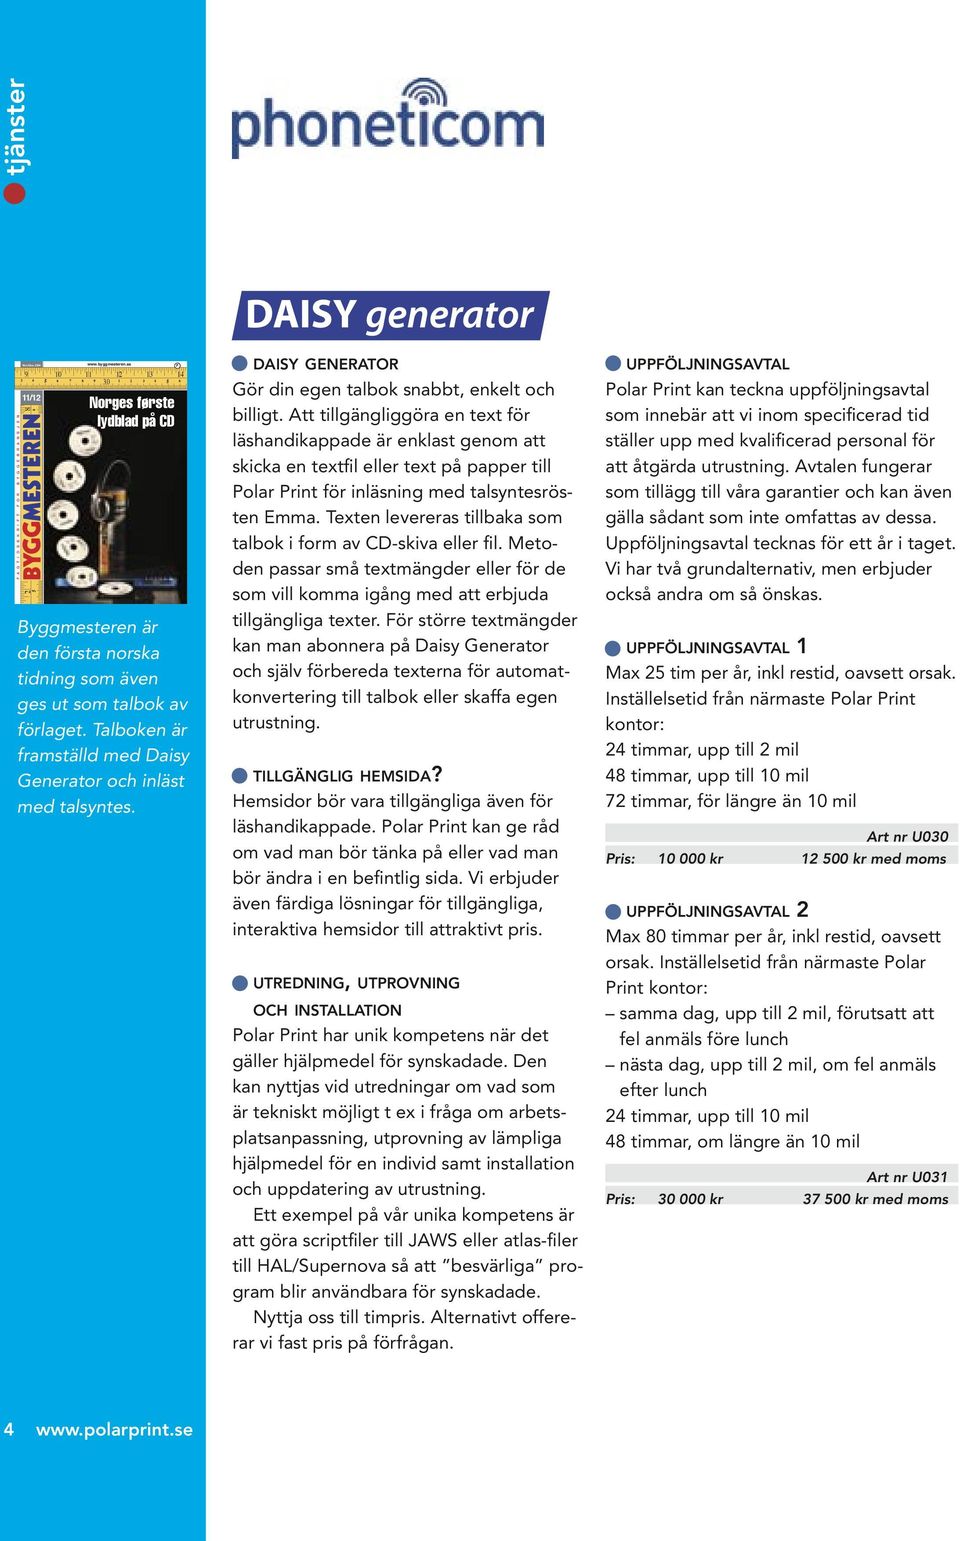 Talboken är framställd med Daisy Generator och inläst med talsyntes. F DAISY GENERATOR Gör din egen talbok snabbt, enkelt och billigt.